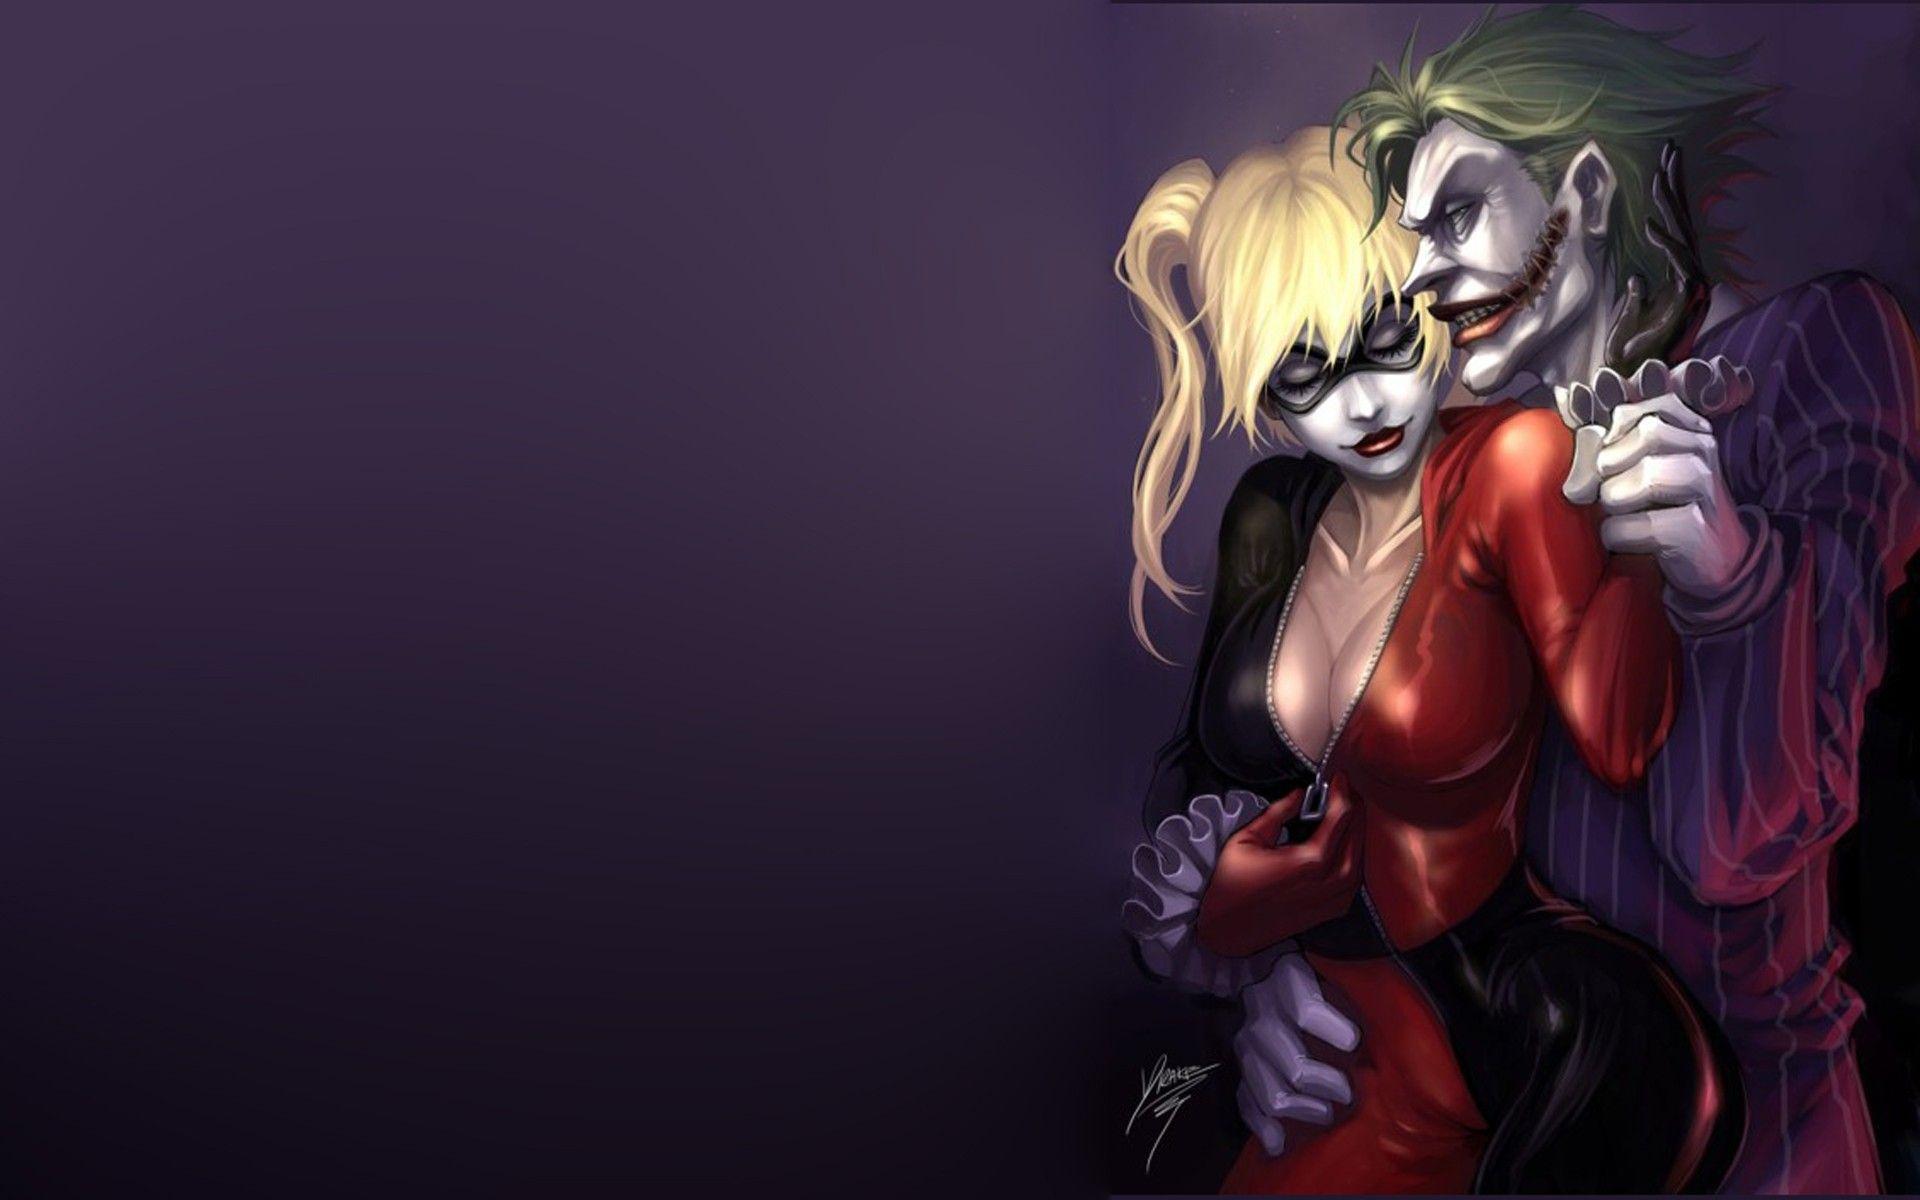 Harley Quinn and Joker wallpaperDownload free beautiful full